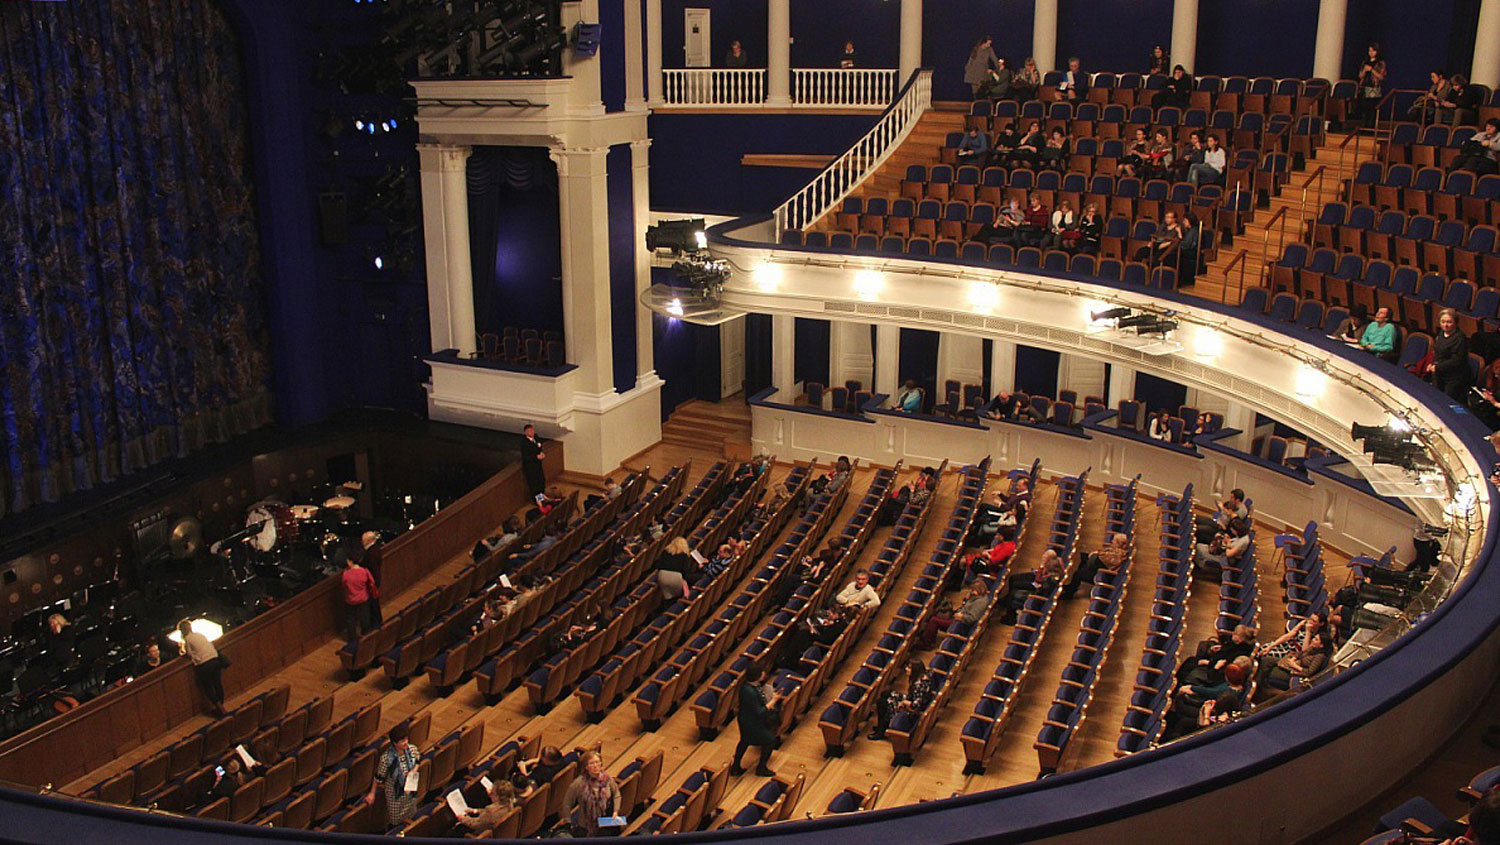 Театр станиславского и немировича данченко зал